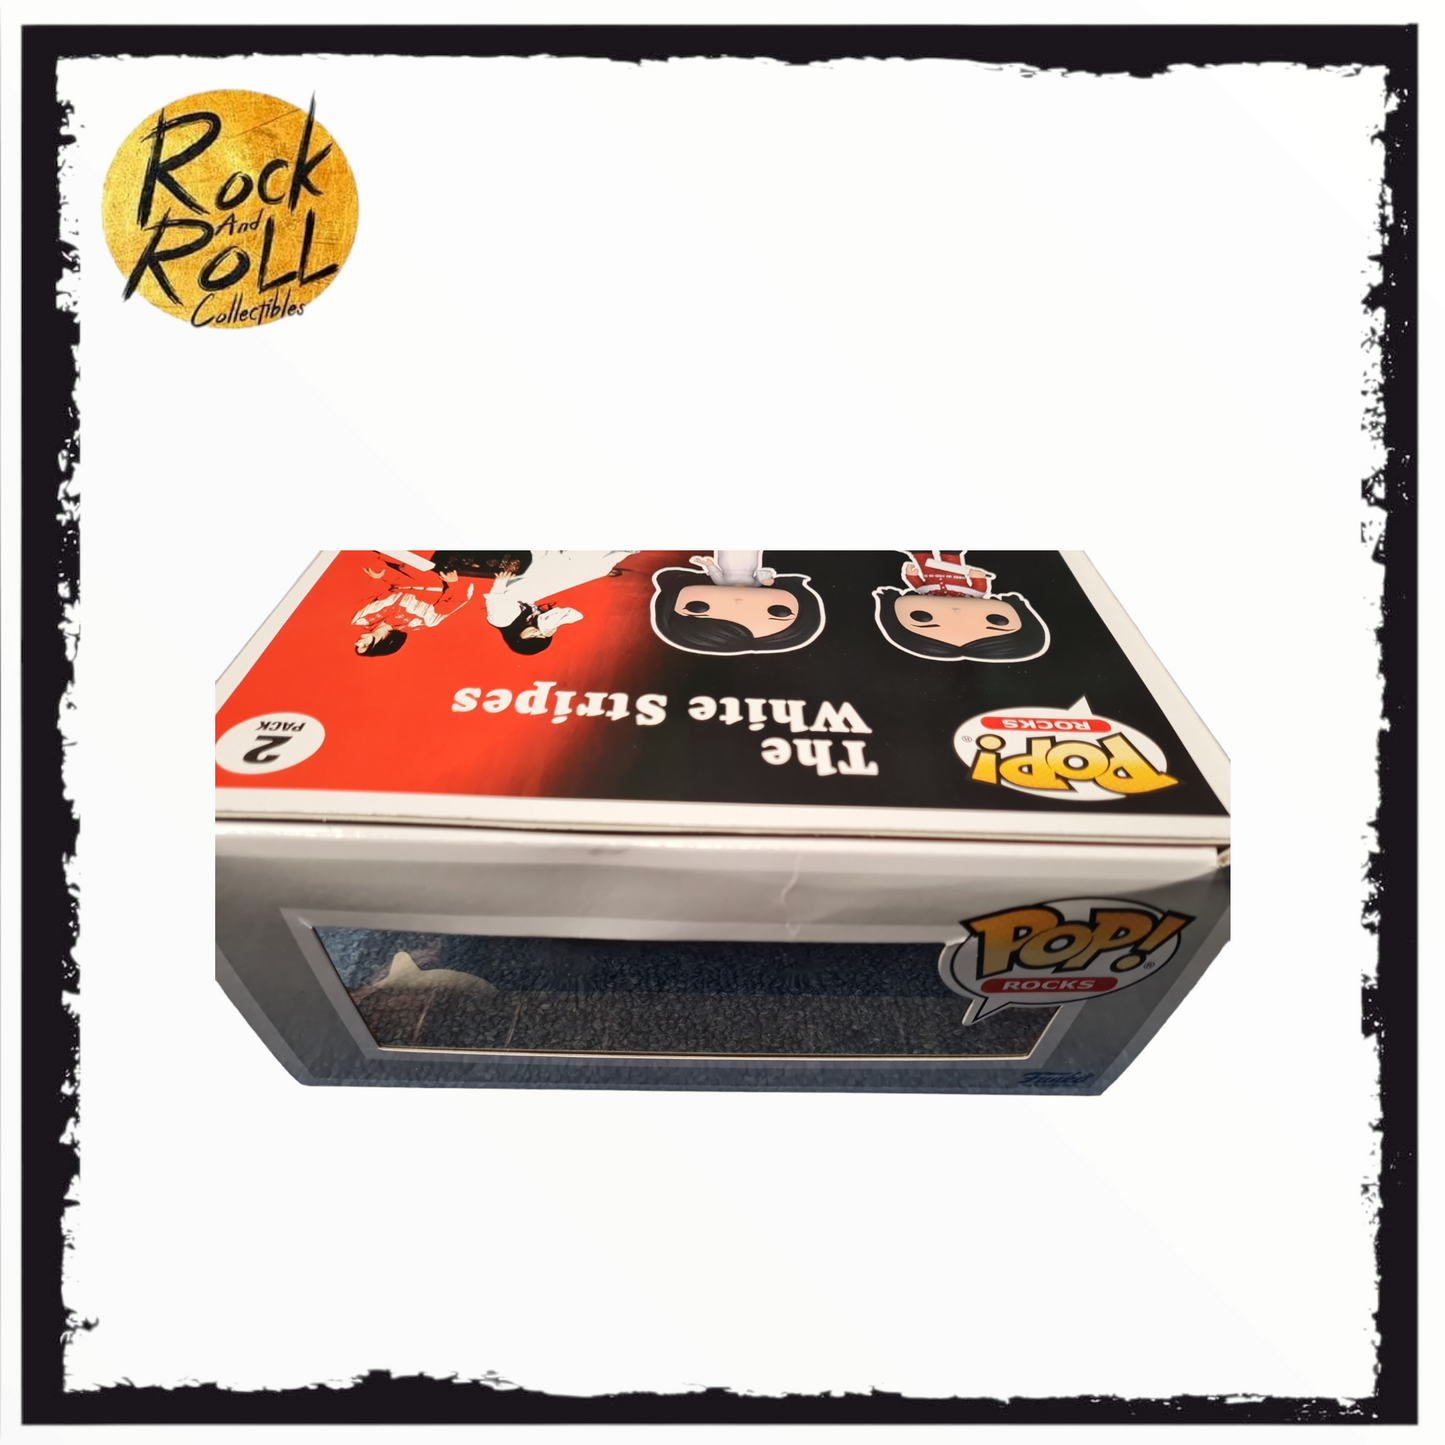 Jack White & Meg White - The White Stripes Funko Pop! 2 Pack *Not Mint Packaging*